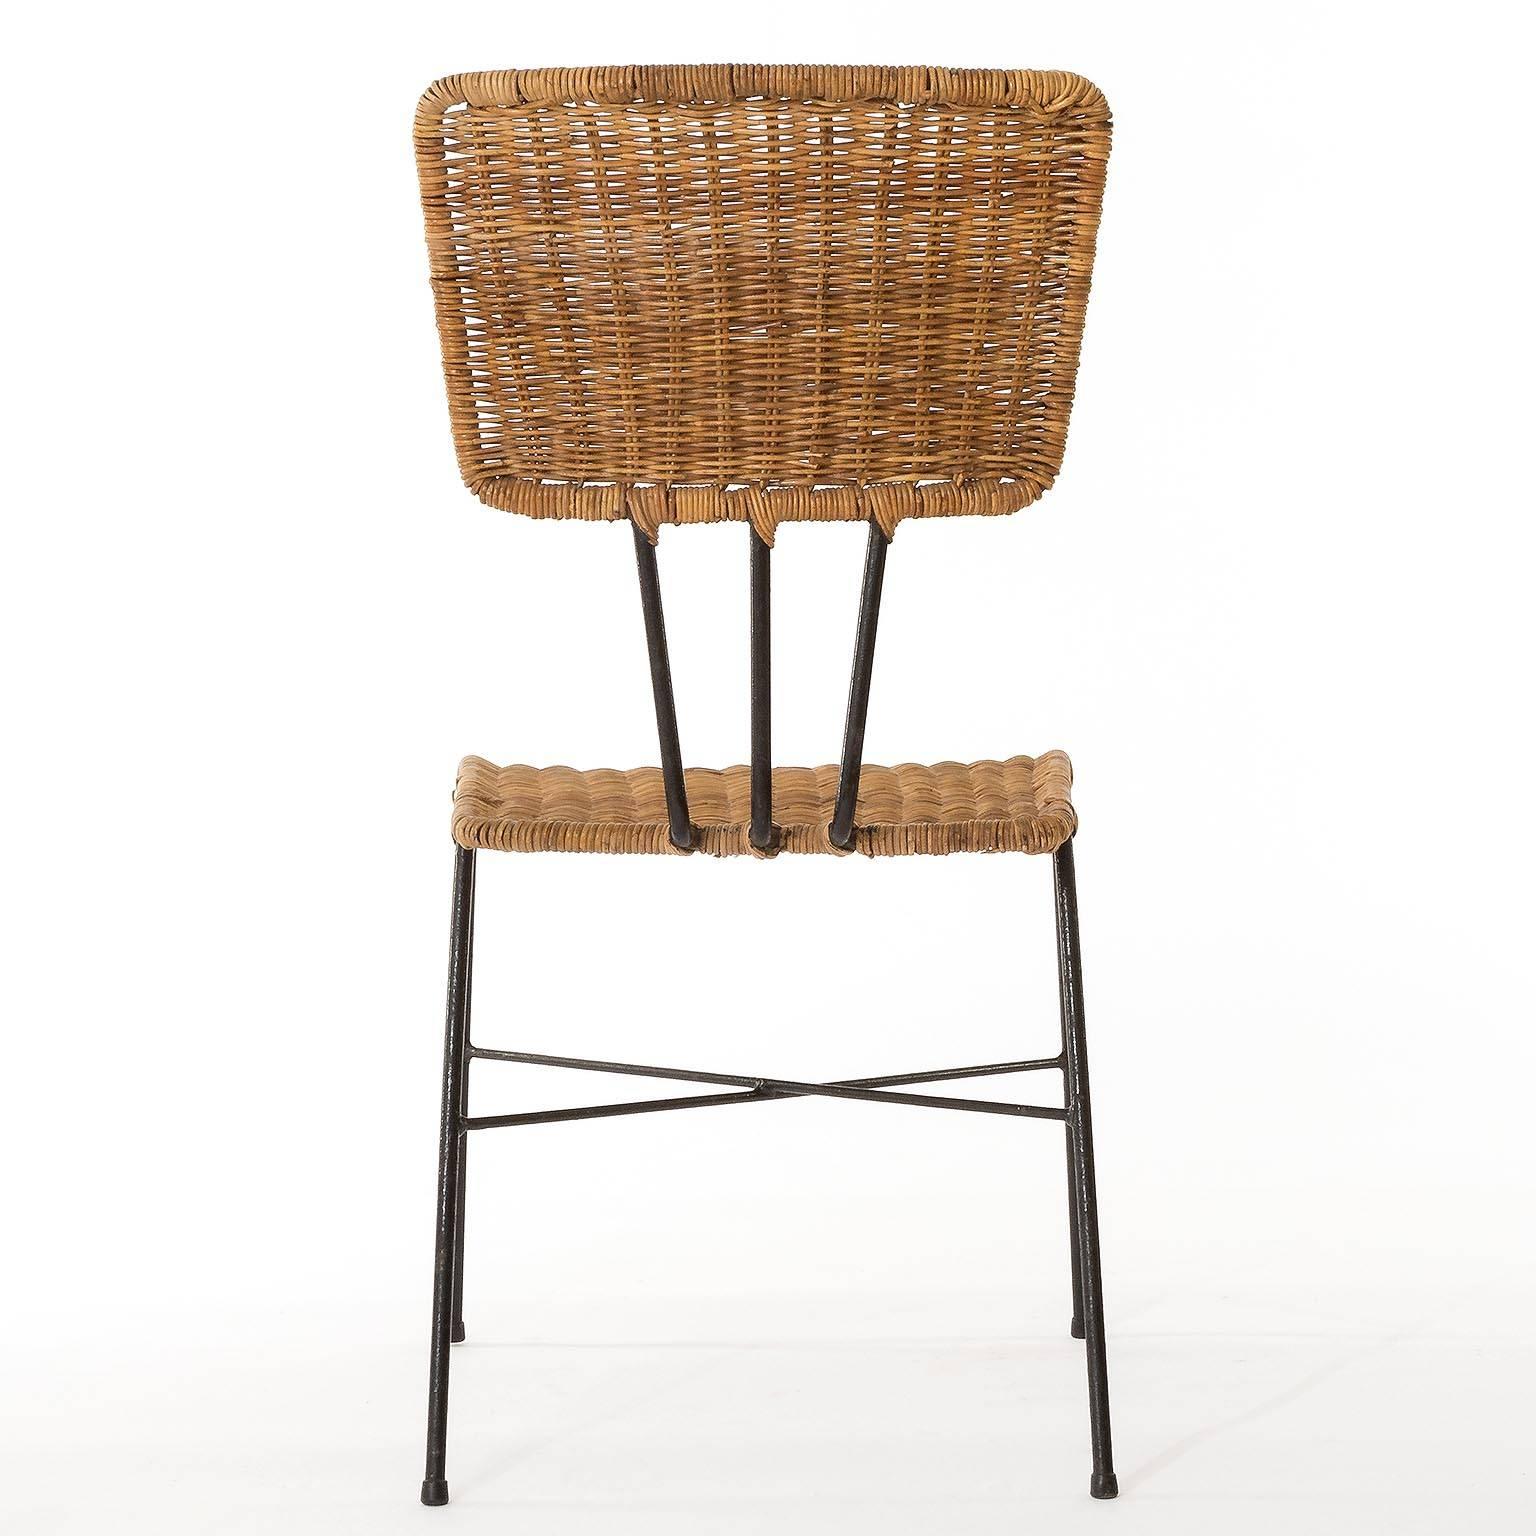 Six Wicker Chairs, 1950s (Mitte des 20. Jahrhunderts)